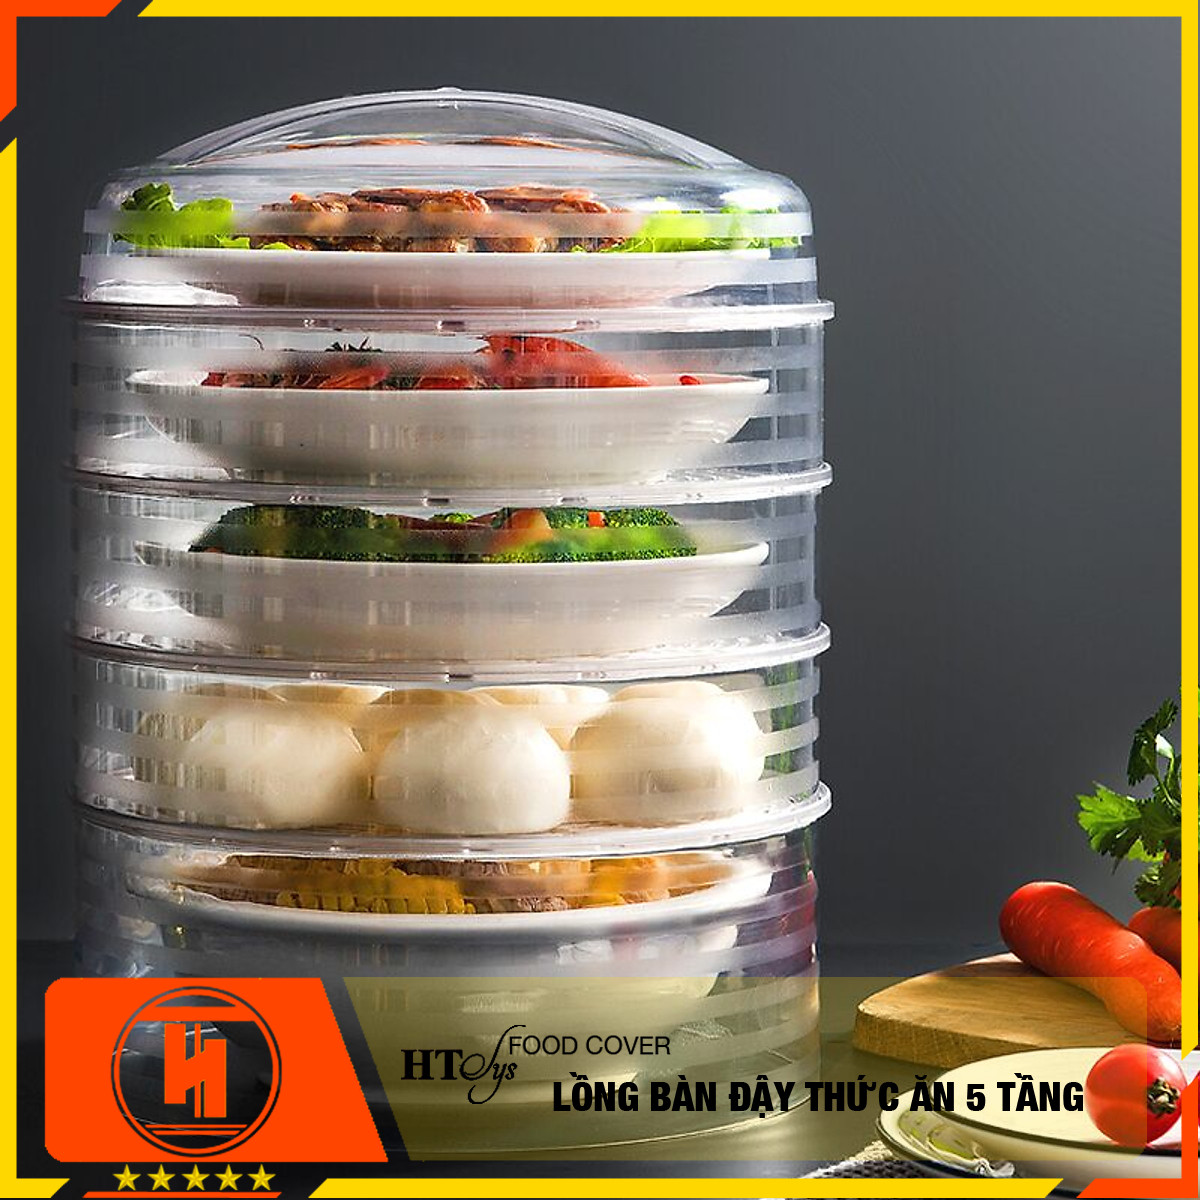 Lồng bàn đậy thức ăn 5 tầng HT SYS -Bảo quản đồ ăn chống bụi và côn trùng - Chất liệu nhựa PP cao cấp